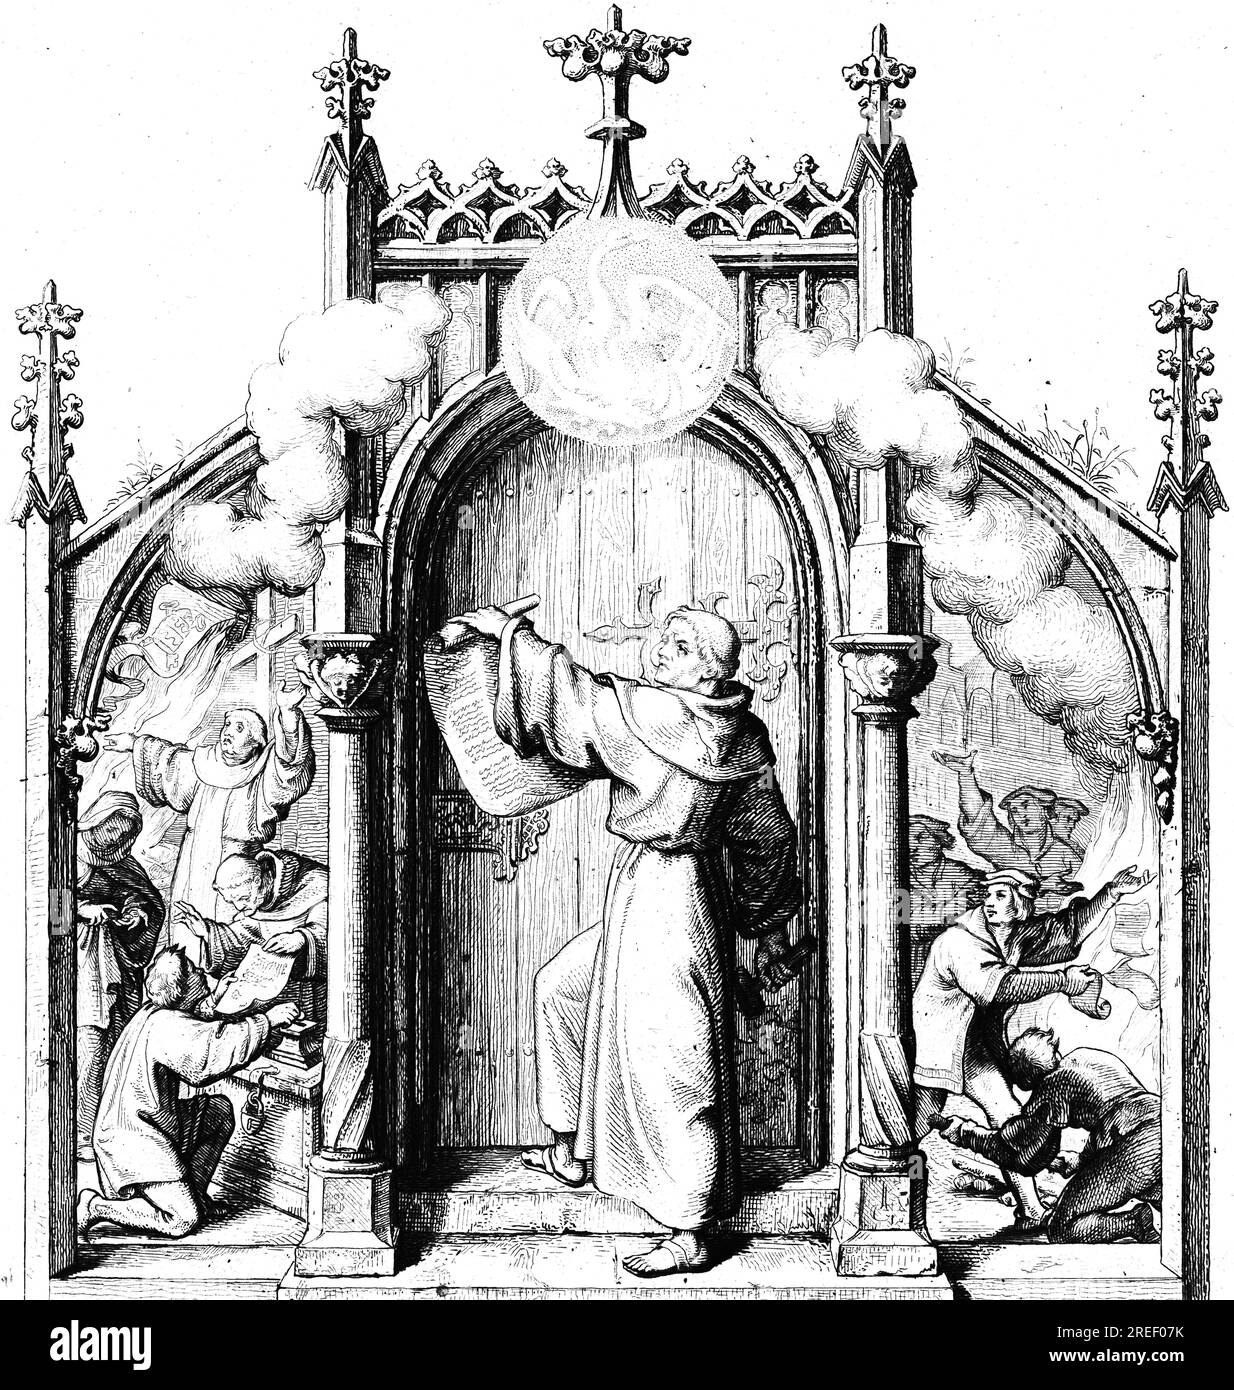 Martin Luther schlägt die 95 Thesen an der Kirchentür in Wittenberg (Zentrum) zu, Genussprediger Tezel (links), Wittenberg-Studenten verbrennen Tezel's Stockfoto